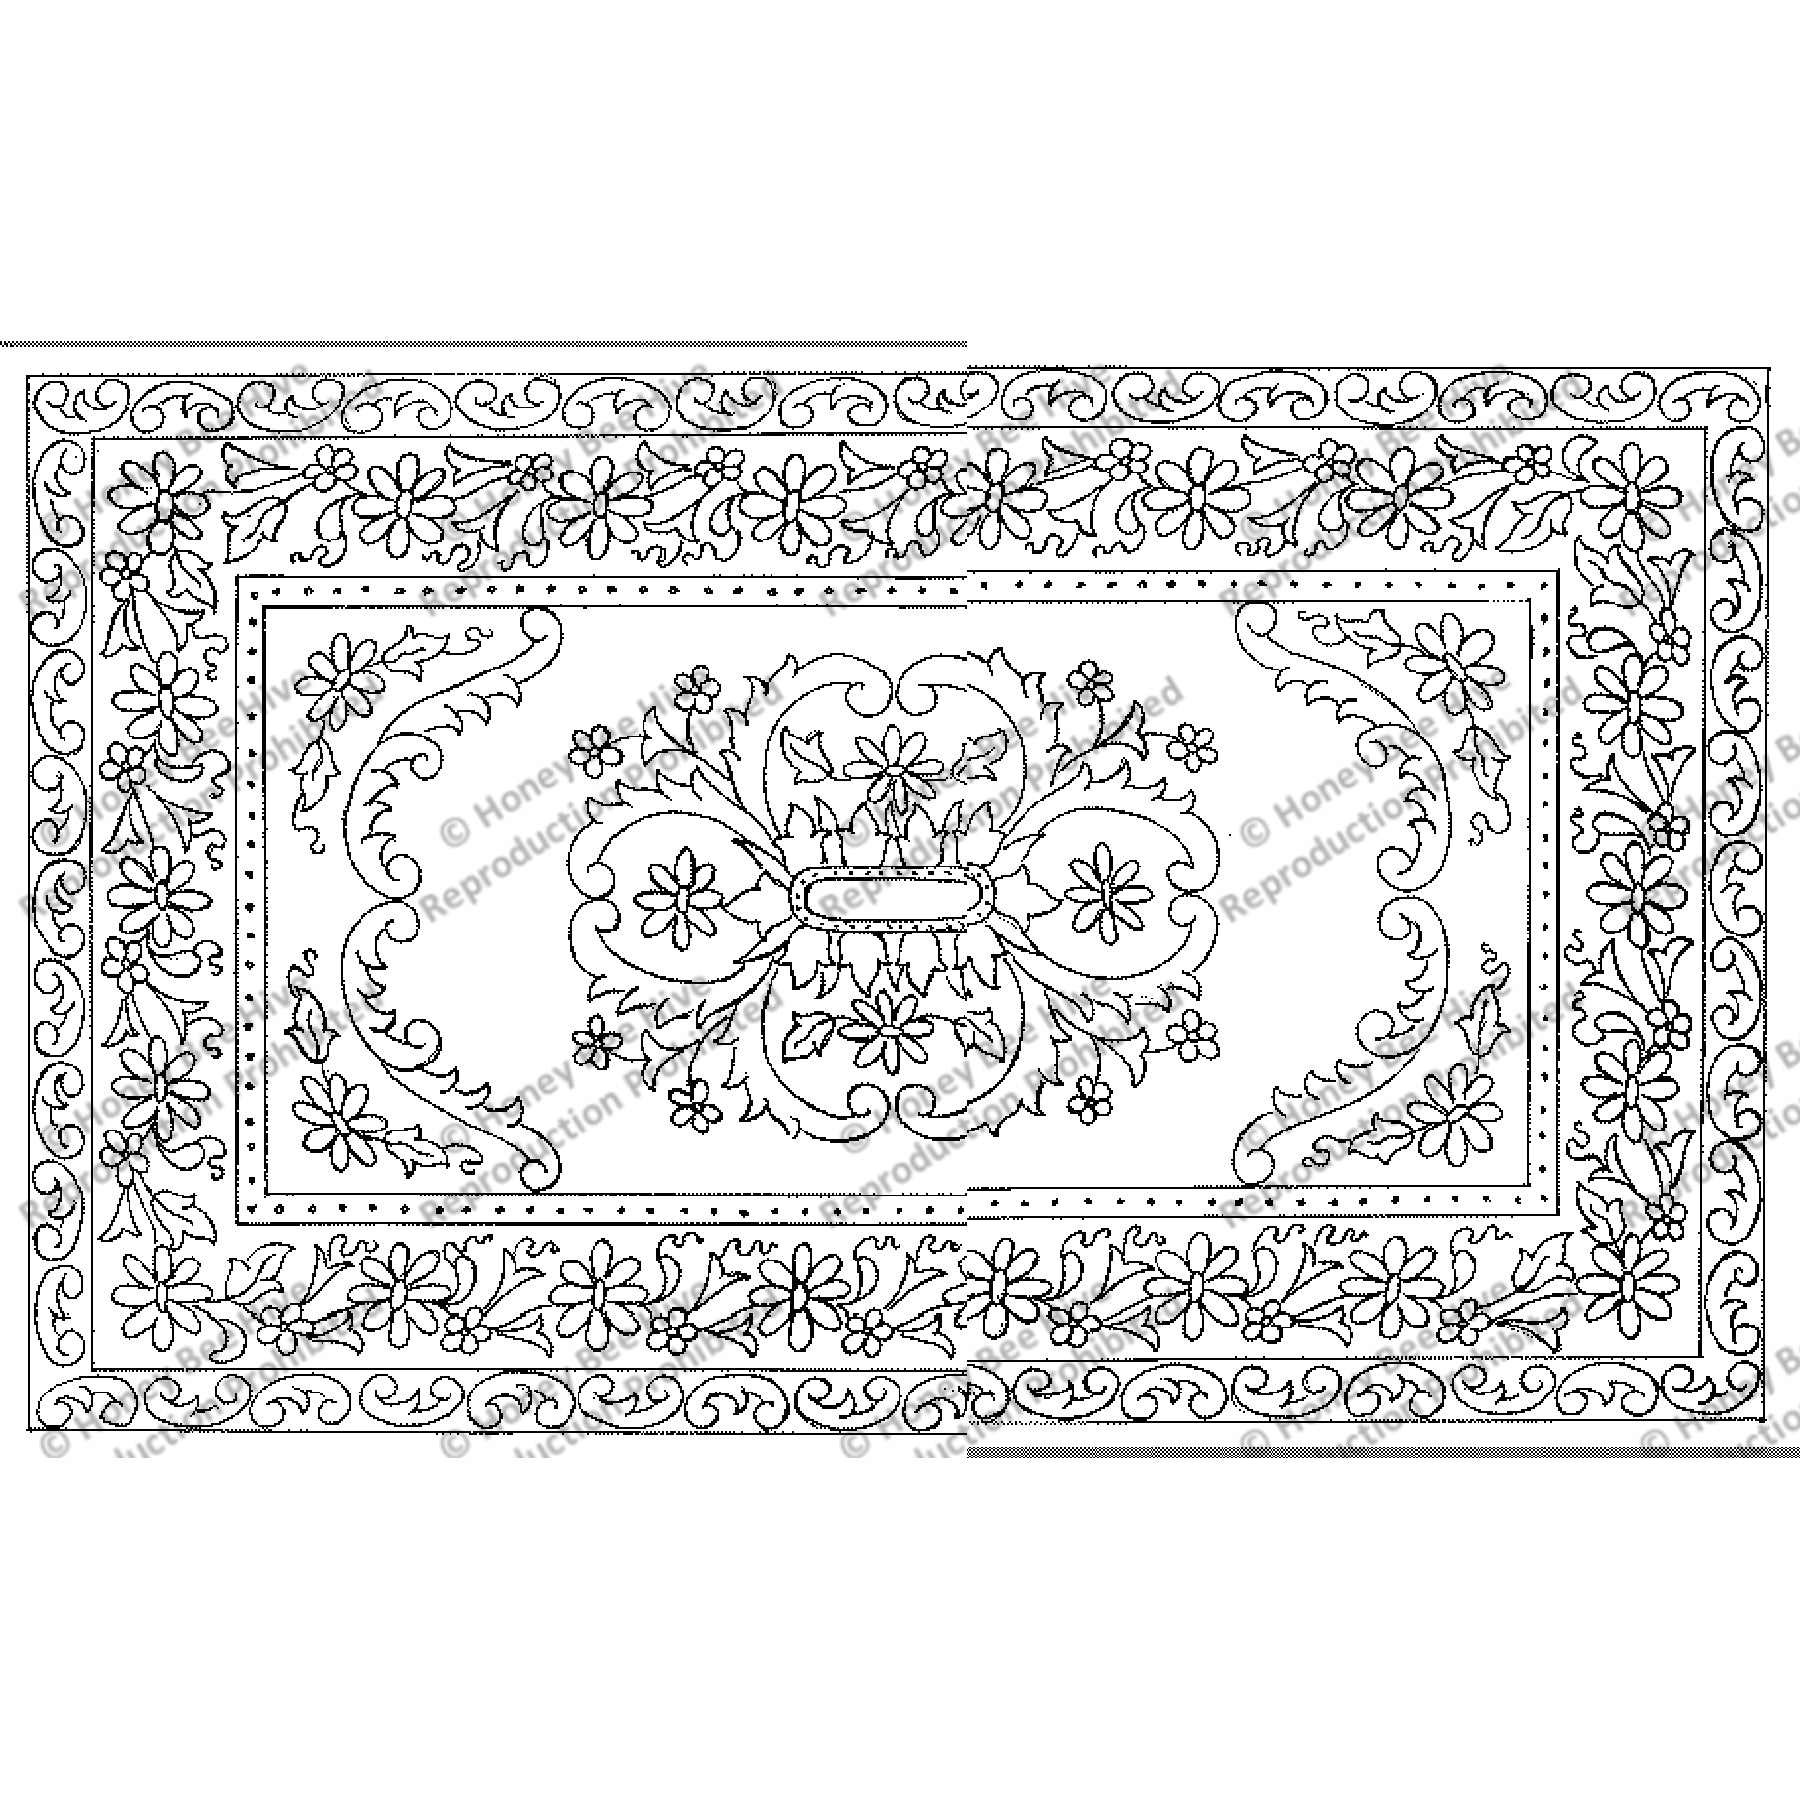 Taba, rug hooking pattern